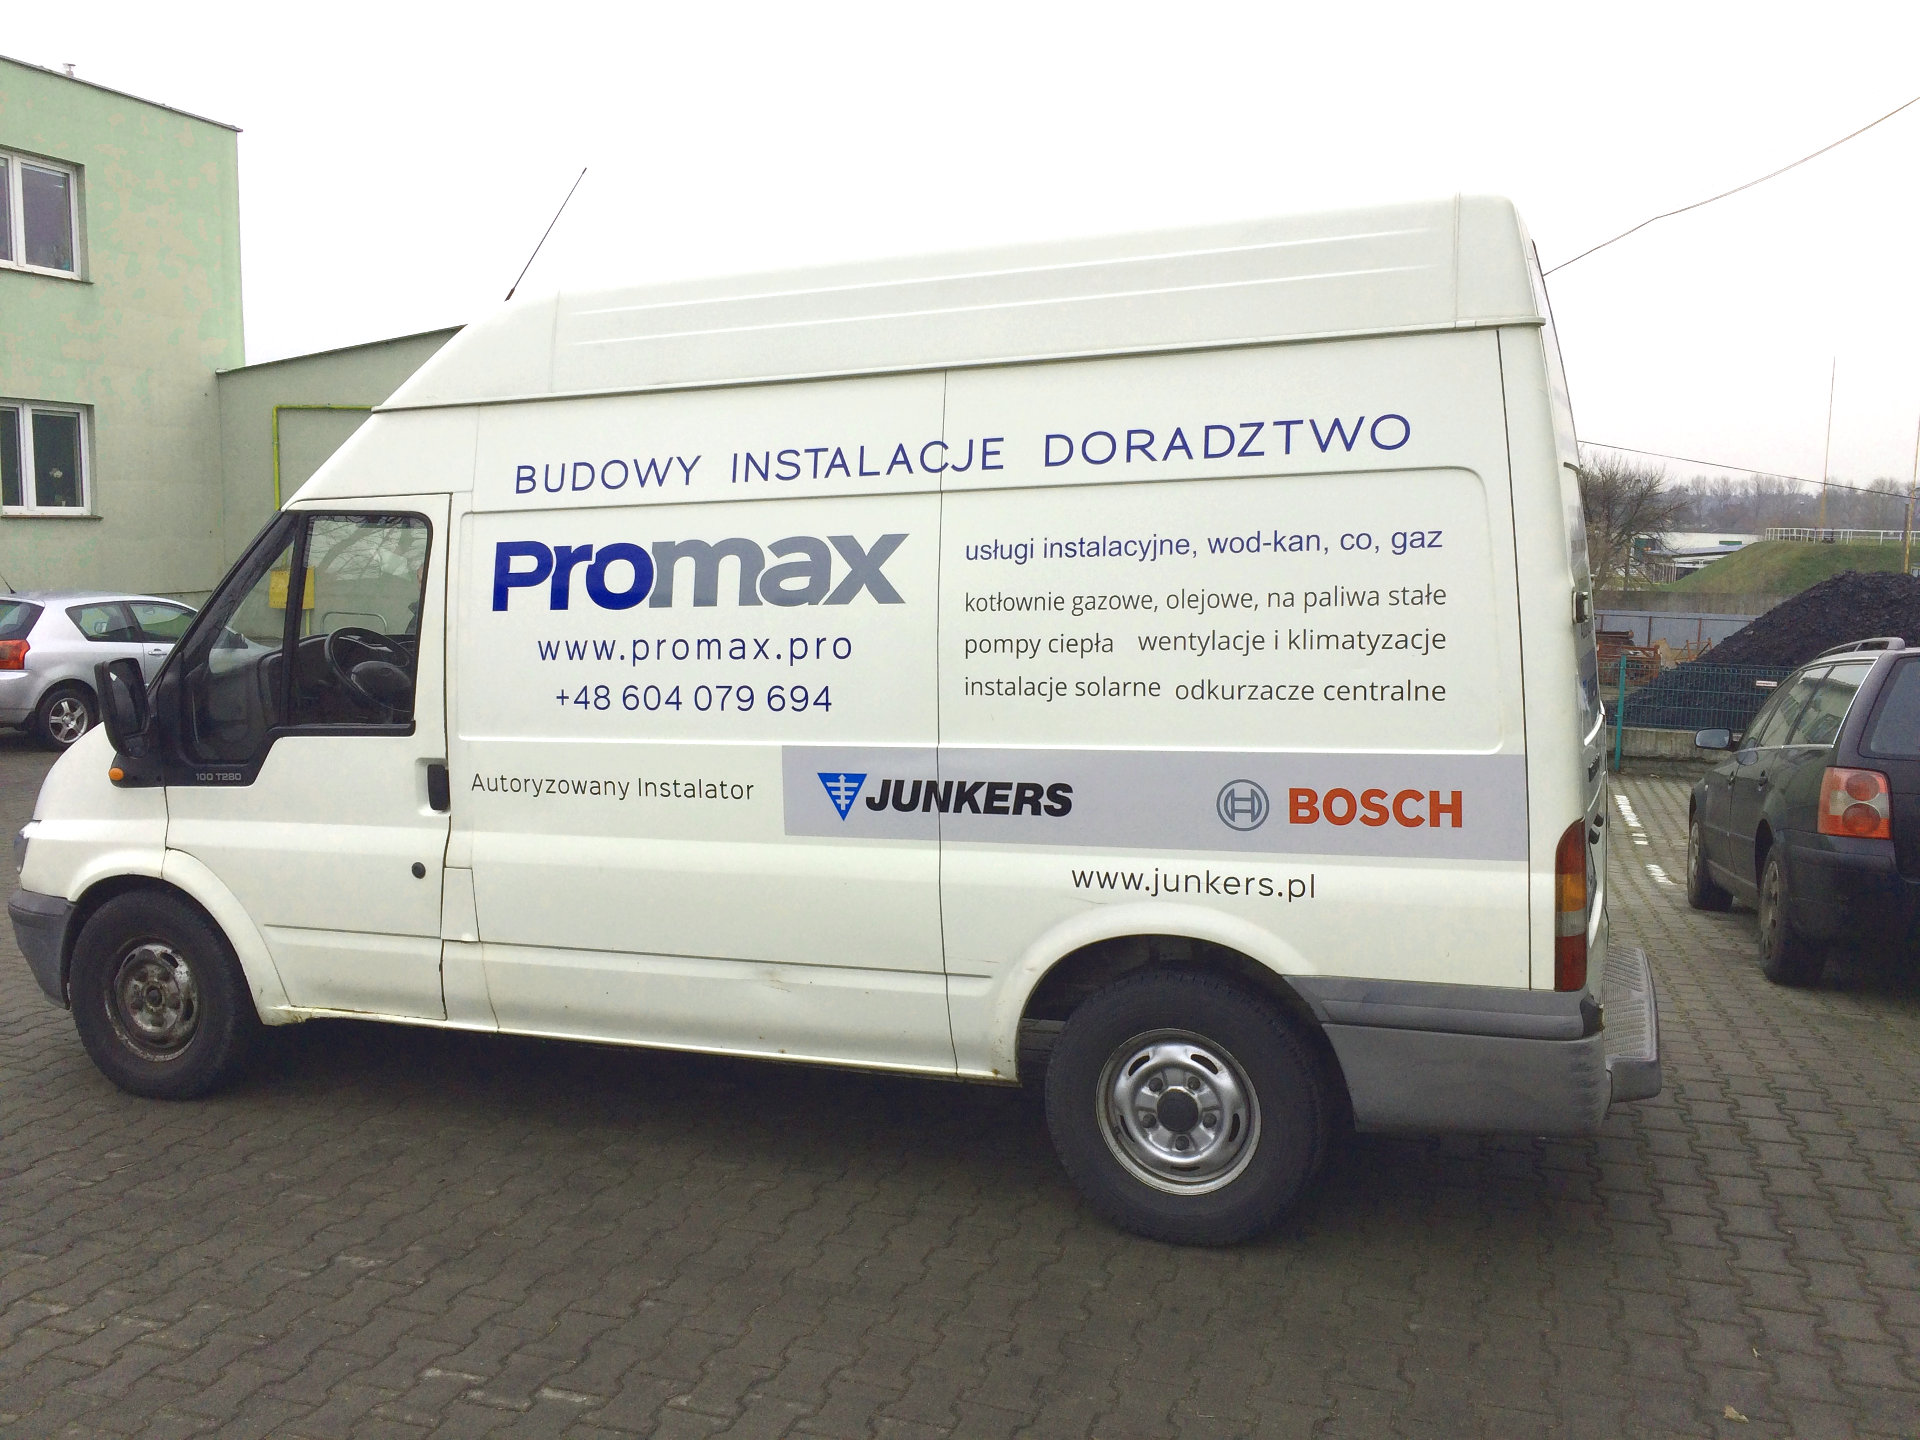 Promax samochód